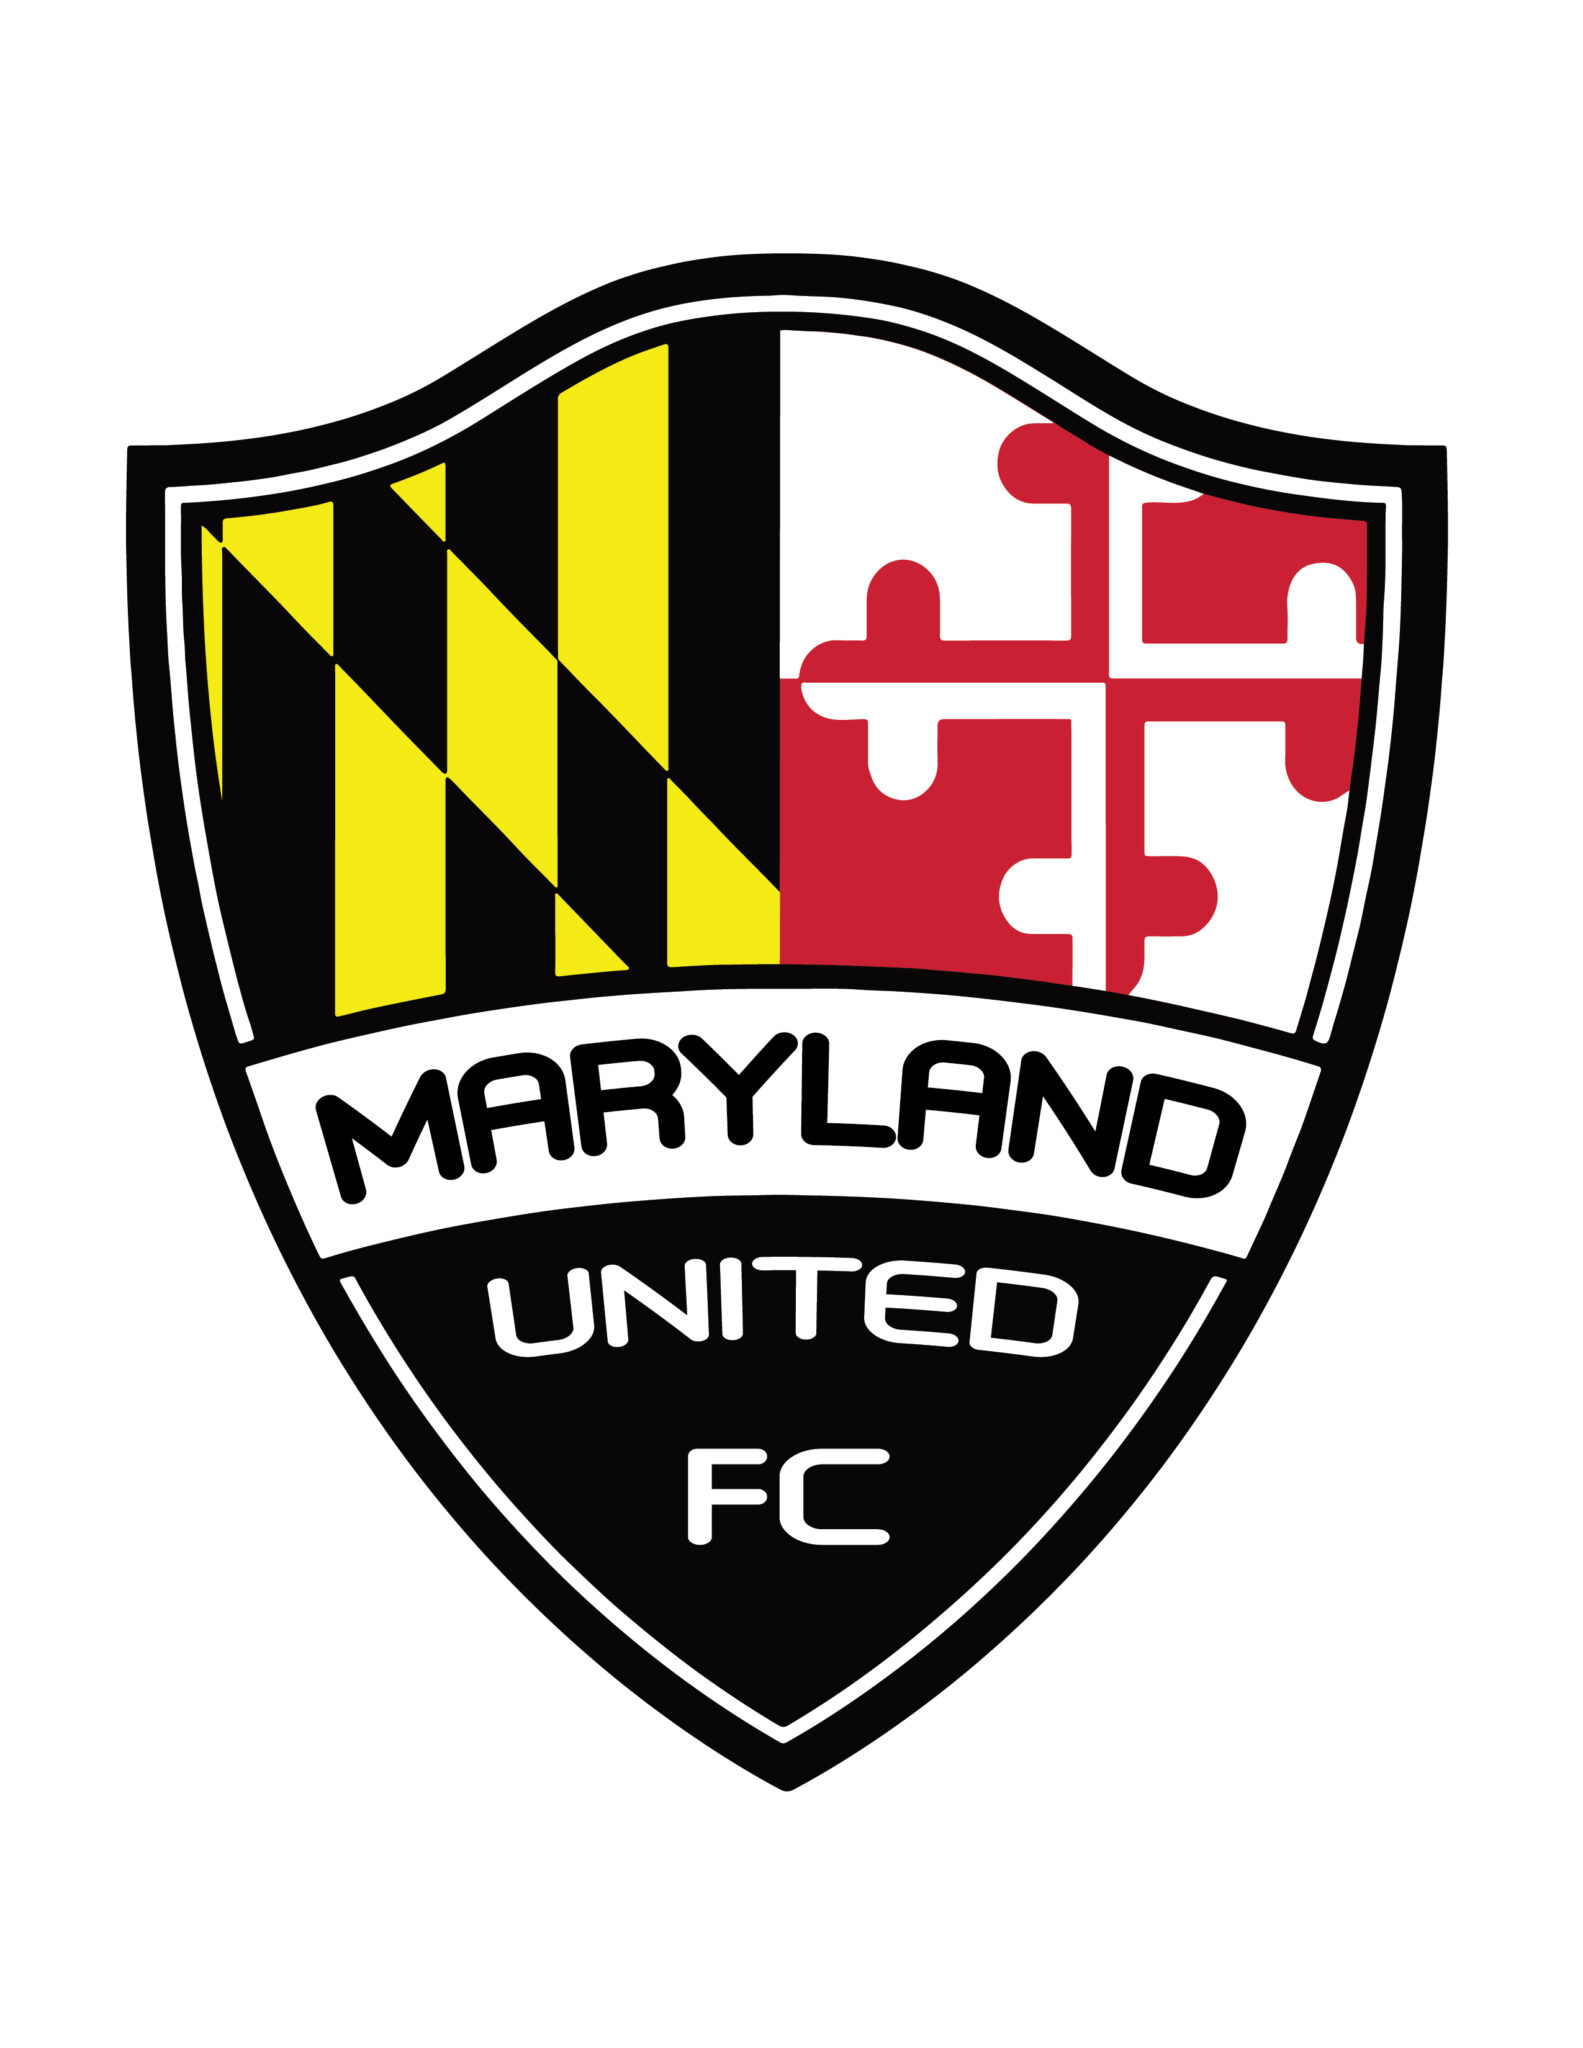 New Uniform Partner — Maryland United FC